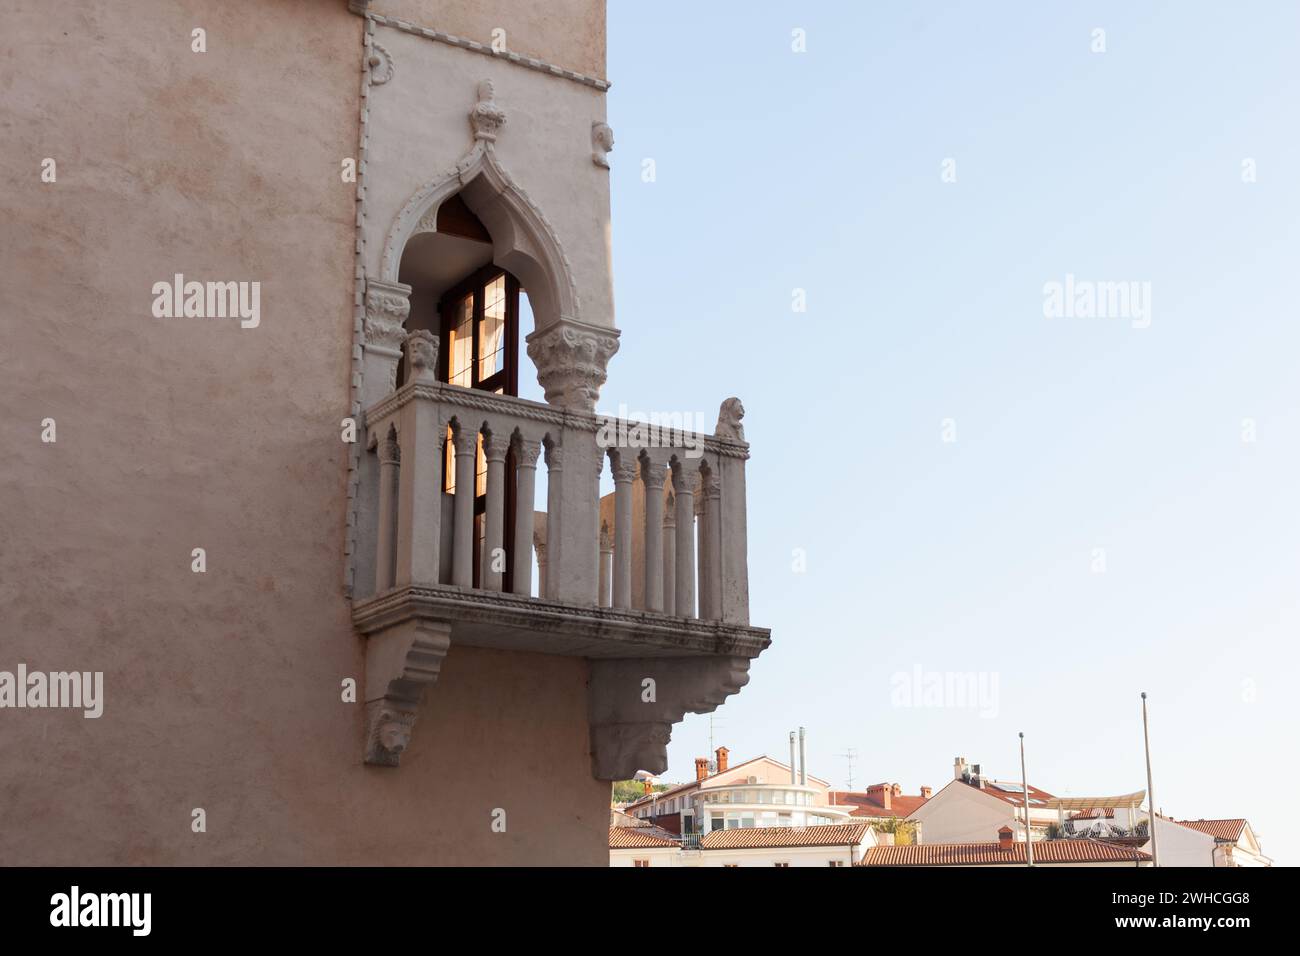 Casa veneziana. Architettura gotica veneziana, metà del XV secolo, tripla finestra, balcone angolare con balaustra in pietra, Piazza Tartini, Pirano, S. Foto Stock